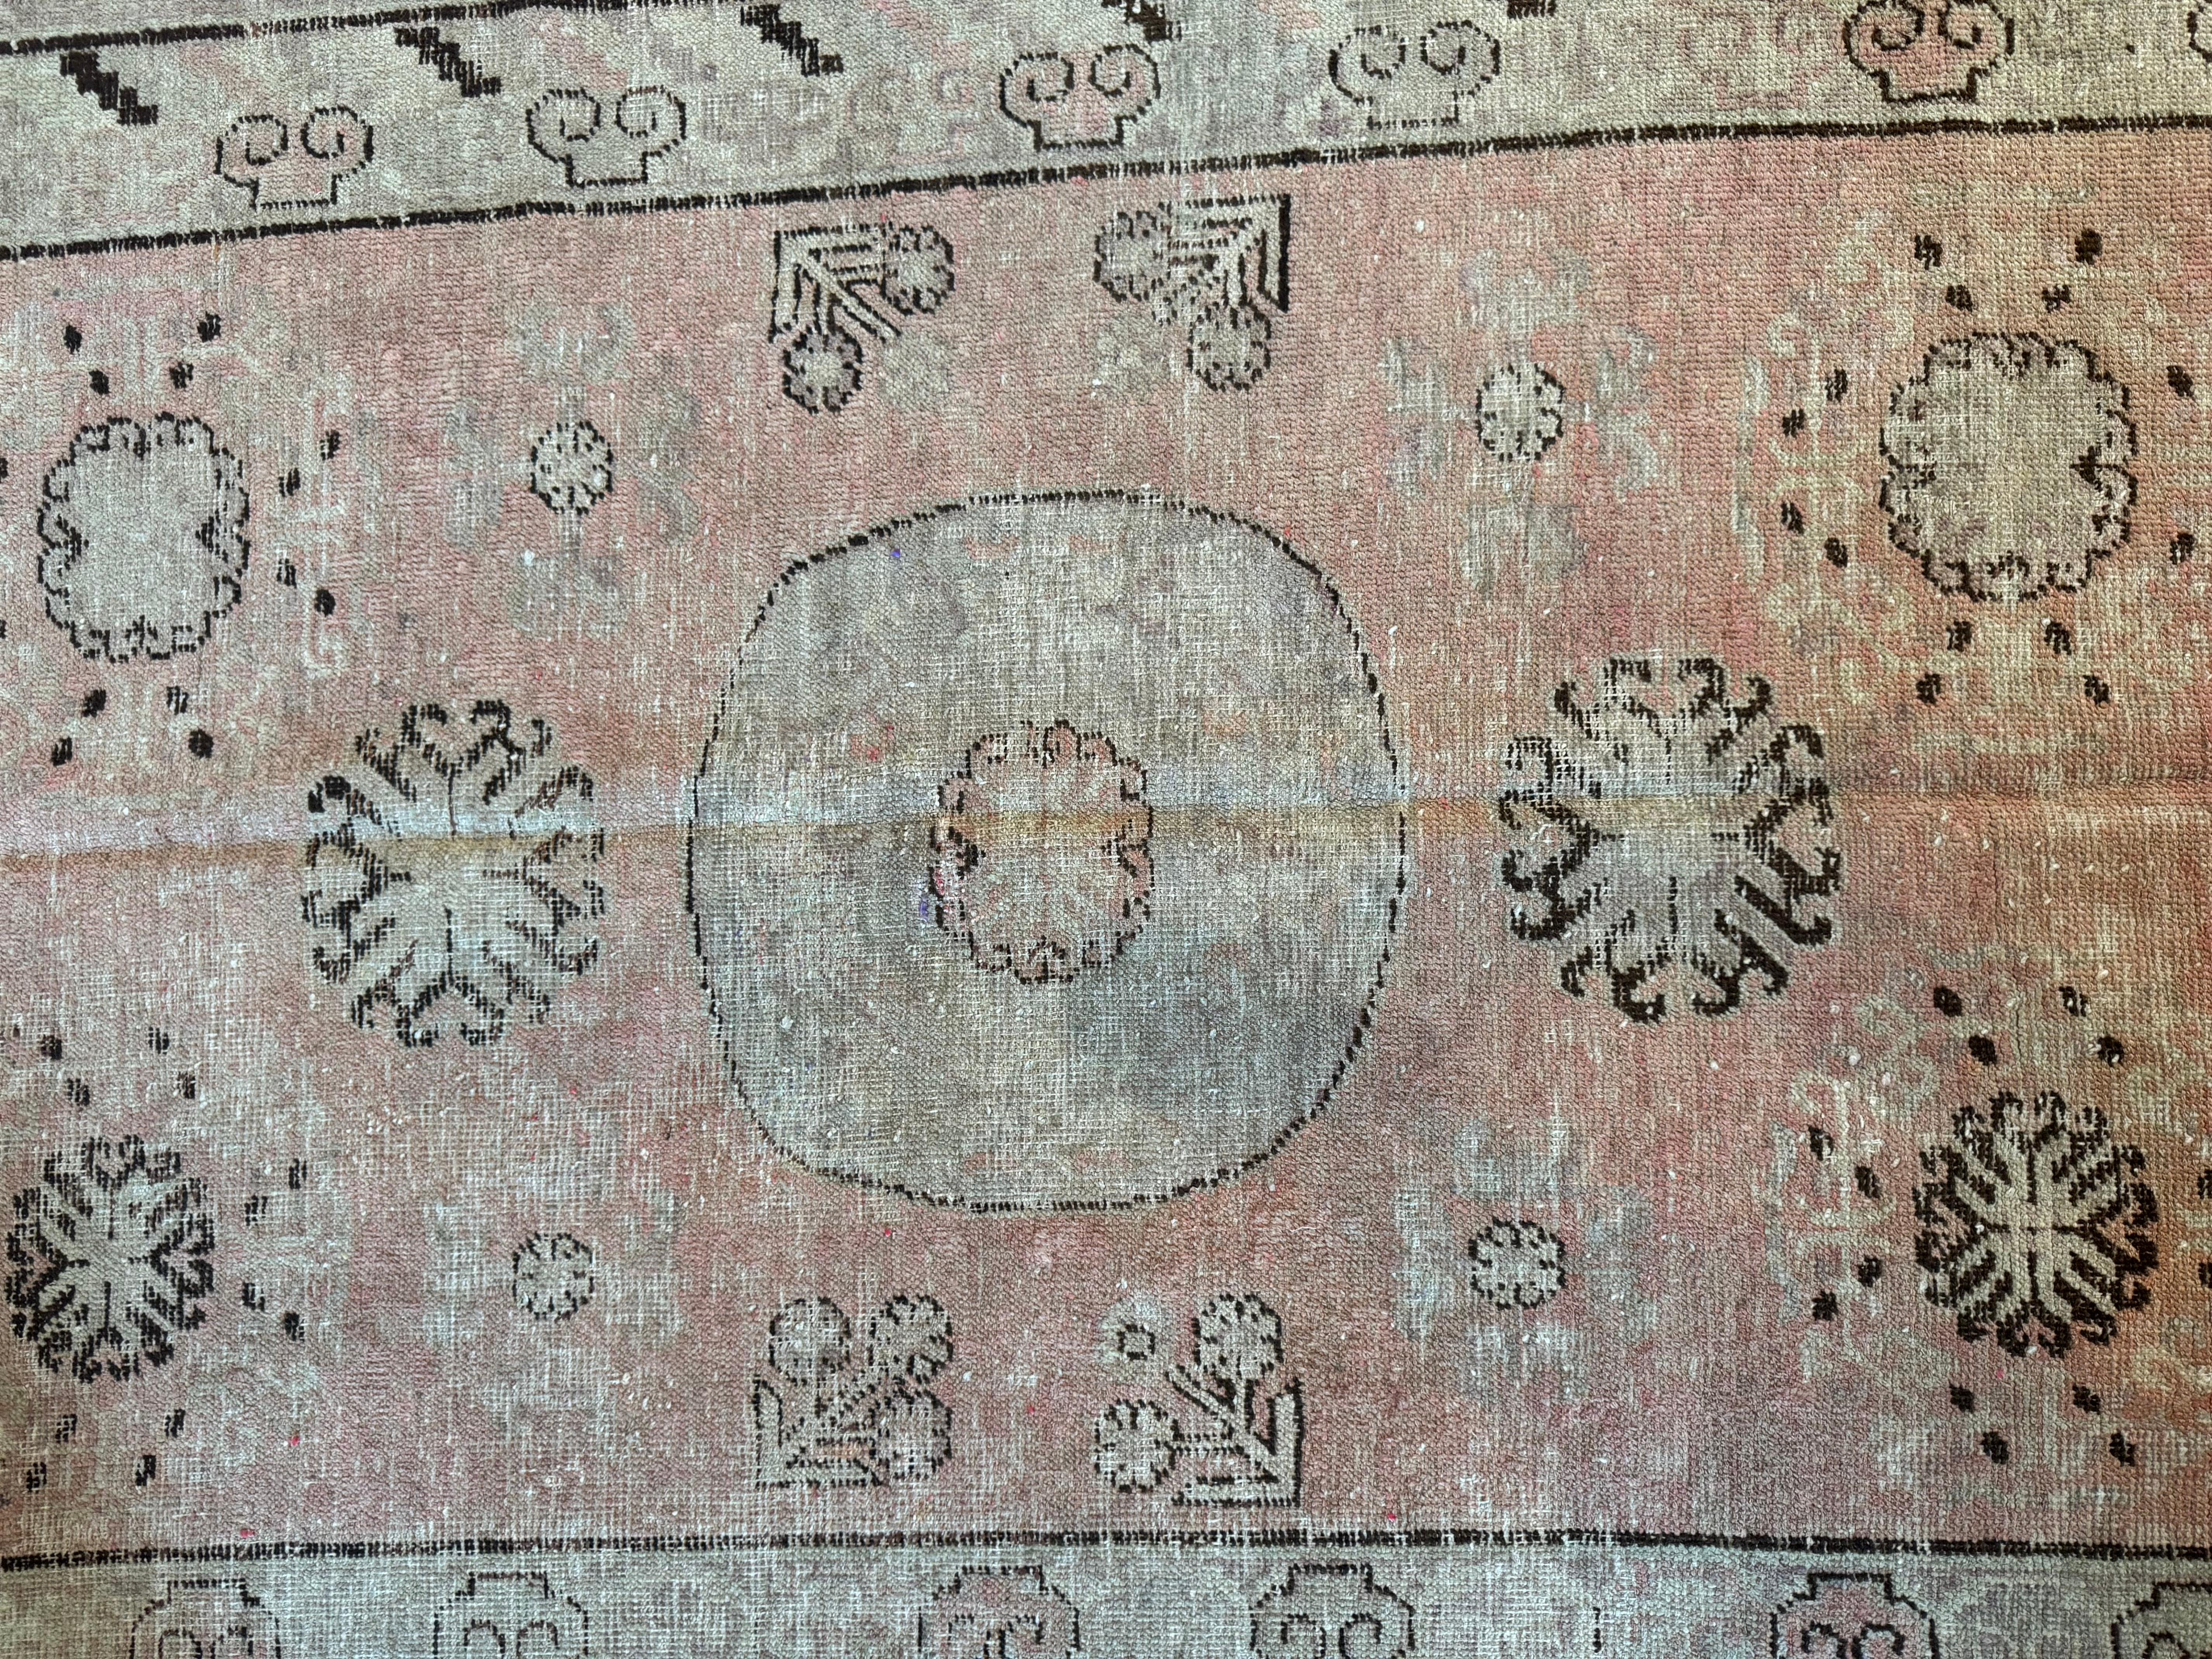 Ajoutez une touche d'histoire à votre espace avec ce tapis Samarkand antique du XIXe siècle, mesurant 6,1' x 4,2'. Ses motifs complexes et son attrait intemporel en font un élément parfait pour toute maison américaine, alliant le charme du vieux